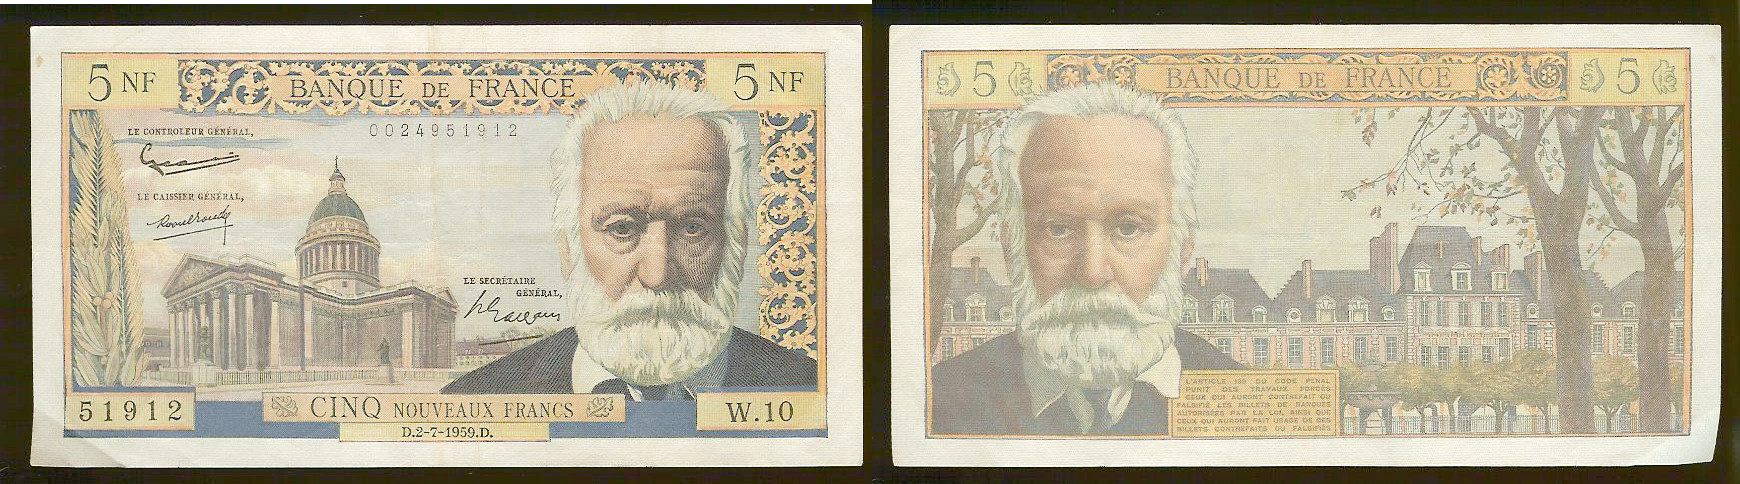 5 Nouveaux Francs VICTOR HUGO FRANCE 2.7.1959 TTB+